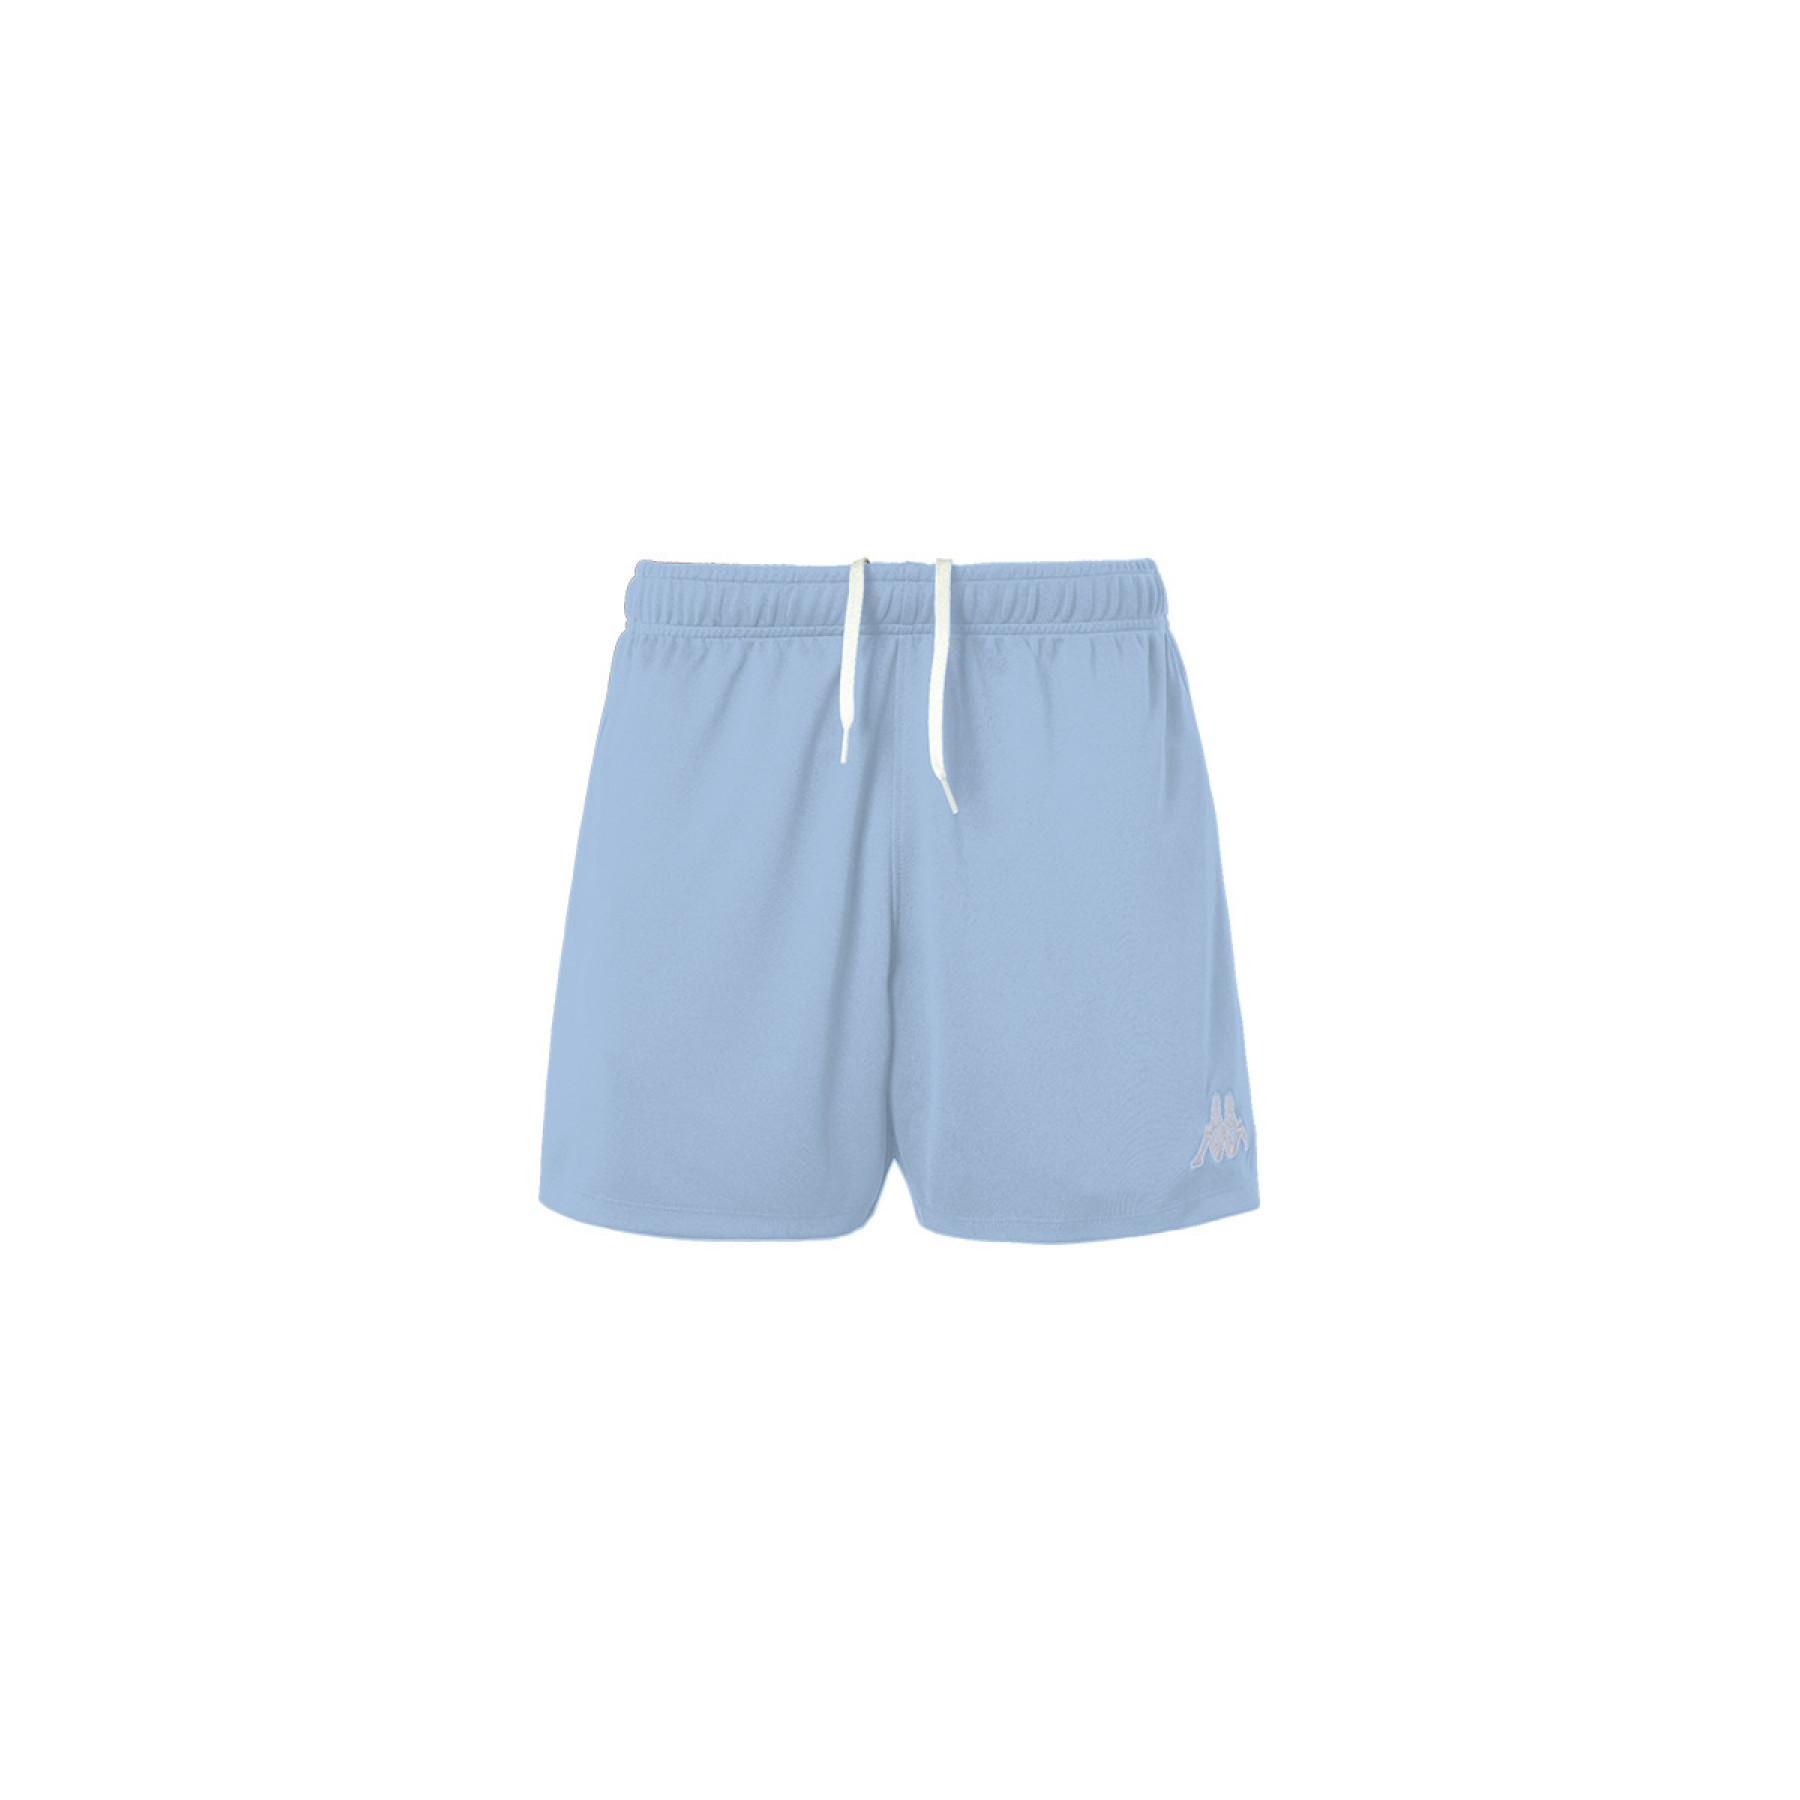 Kinder shorts Kappa Sanremo